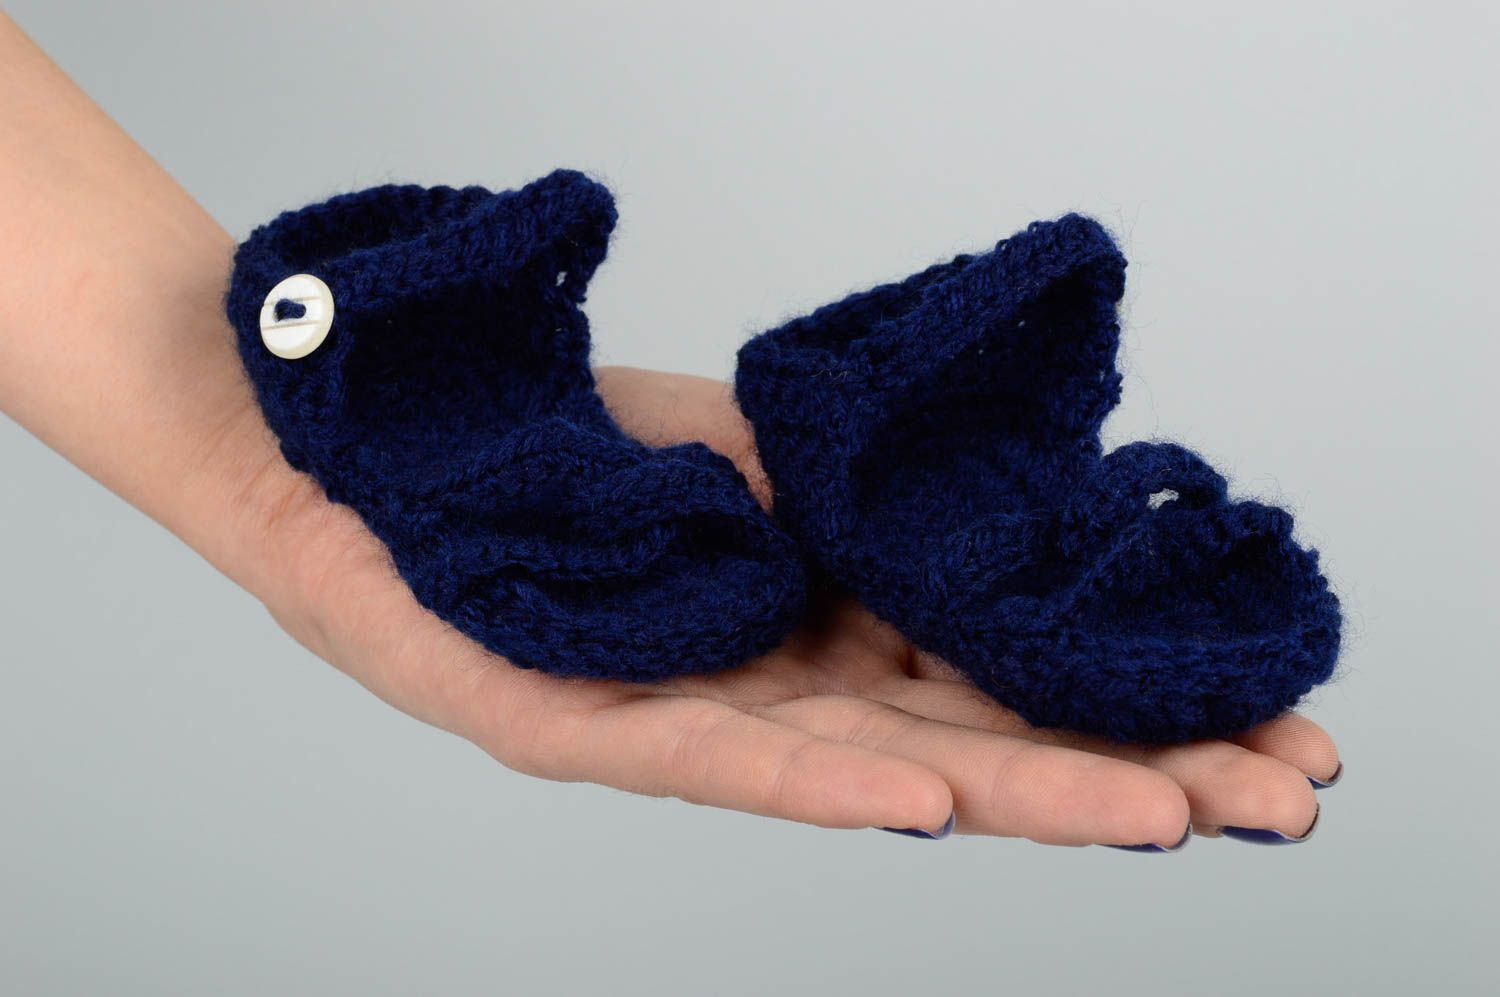 Cute handmade crochet baby booties warm baby booties designer baby accessories photo 2